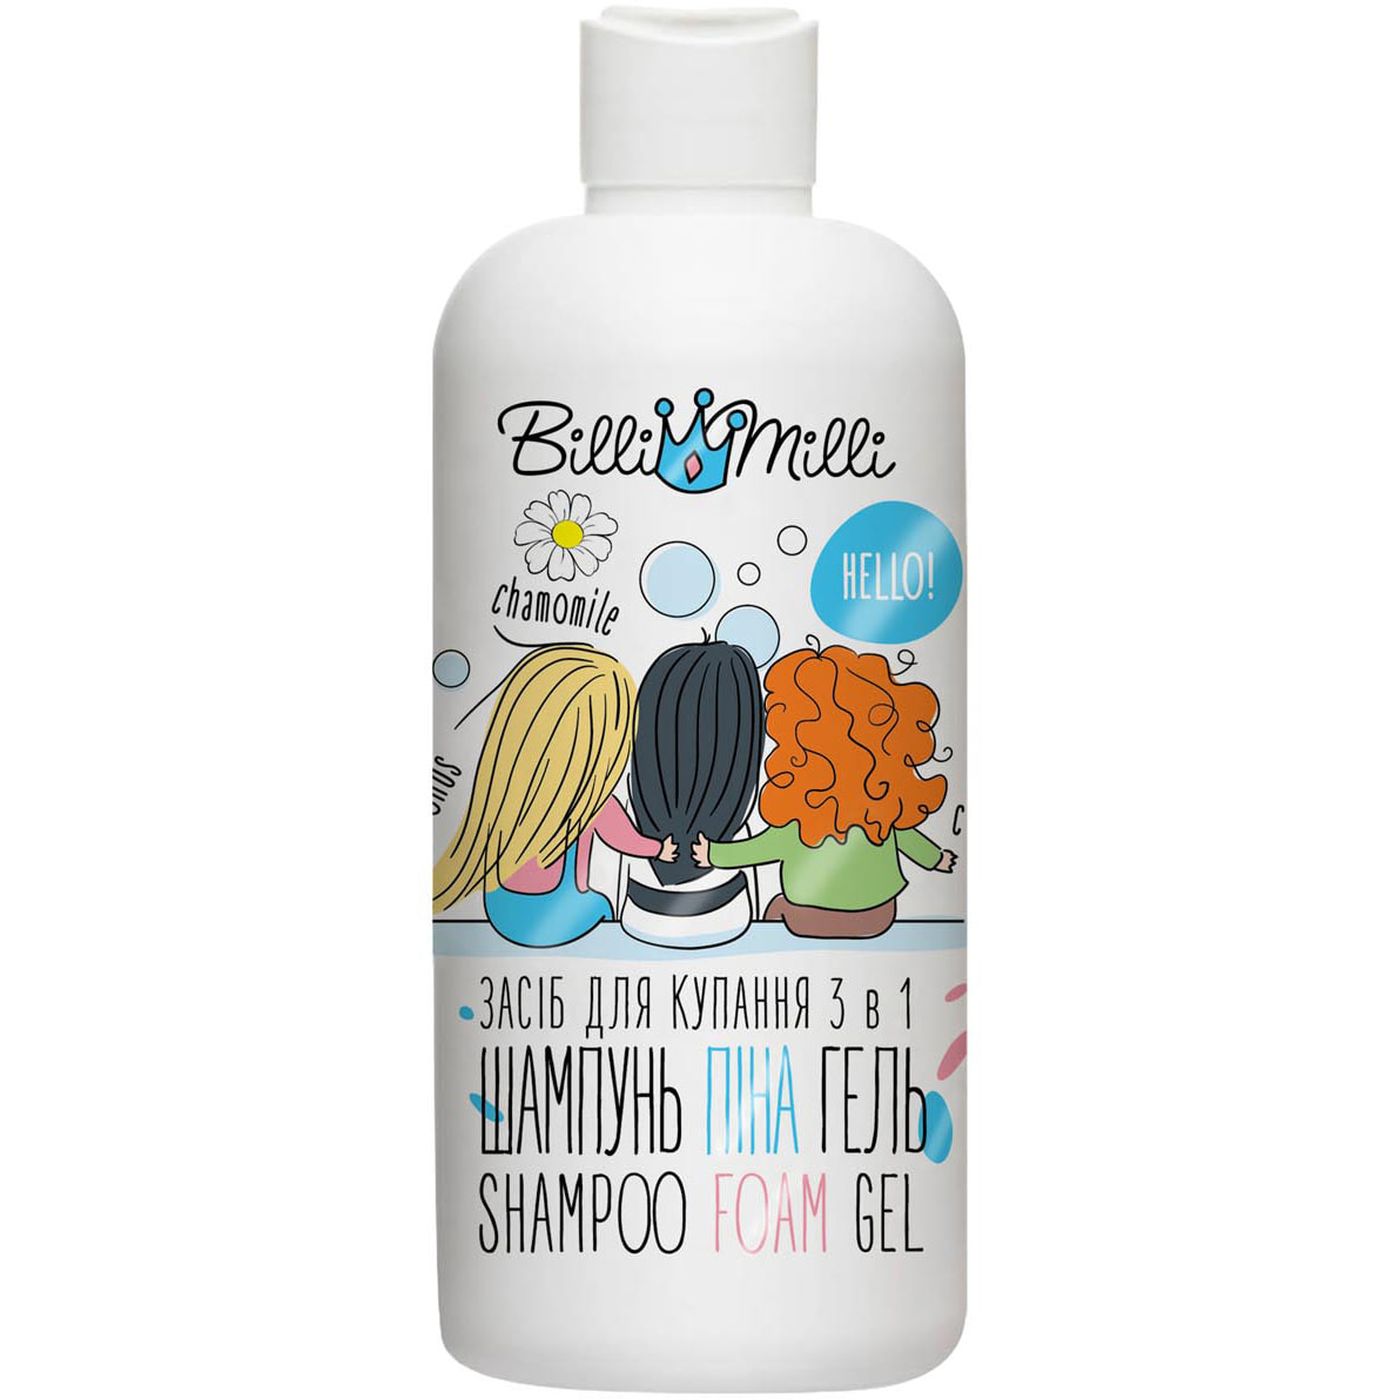 Засіб для купання Billi Milli Shampoo Foam Gel 3 в 1 мигдаль та лікарські трави 500 мл - фото 1